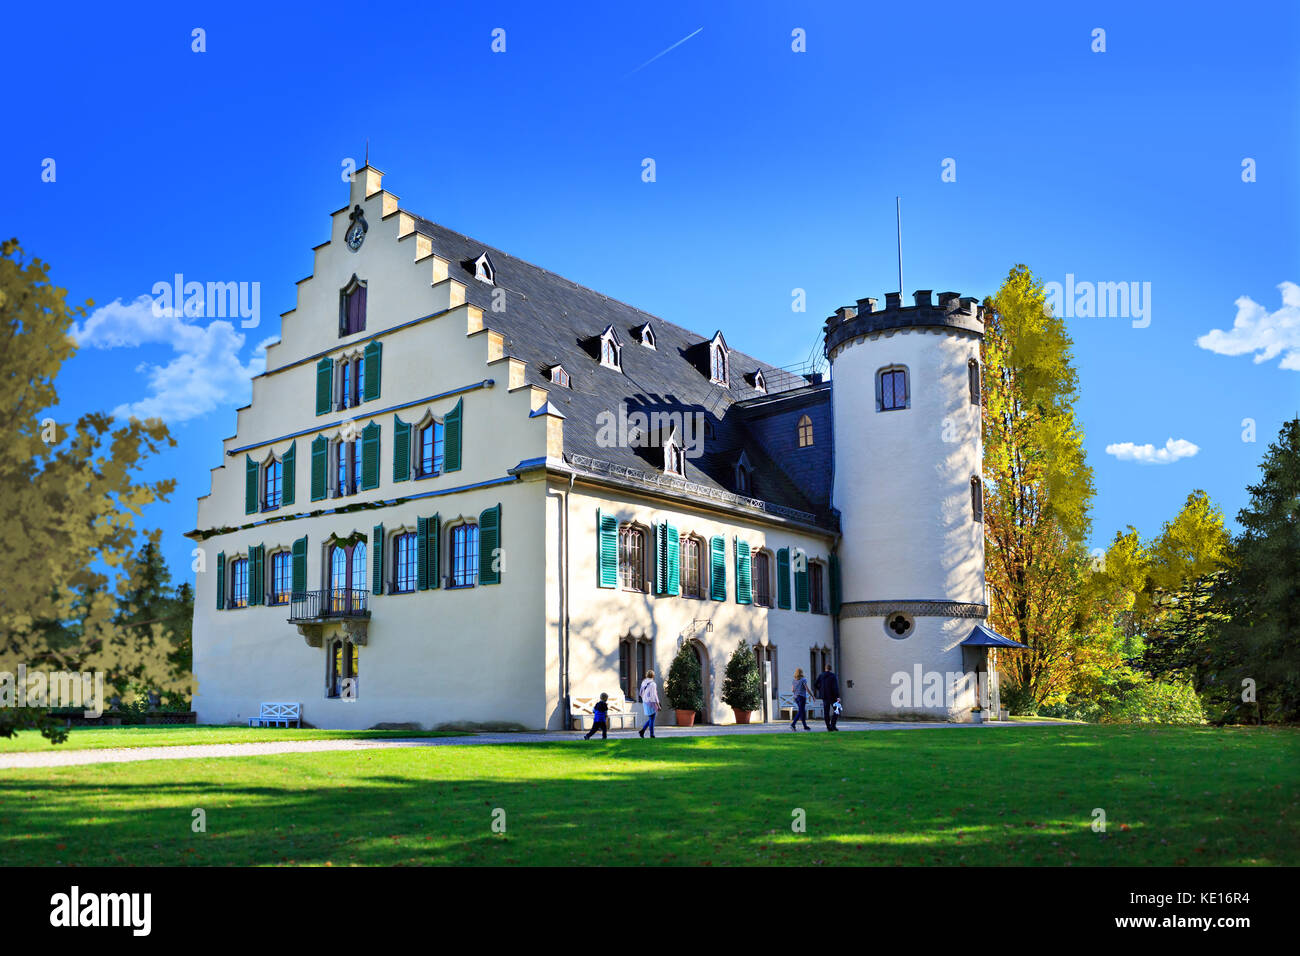 Coburg, Alemania: circa octubre, 2017: Schloss rosenau, un palacio en rosenau cerca de Coburg, Baviera, Alemania Foto de stock